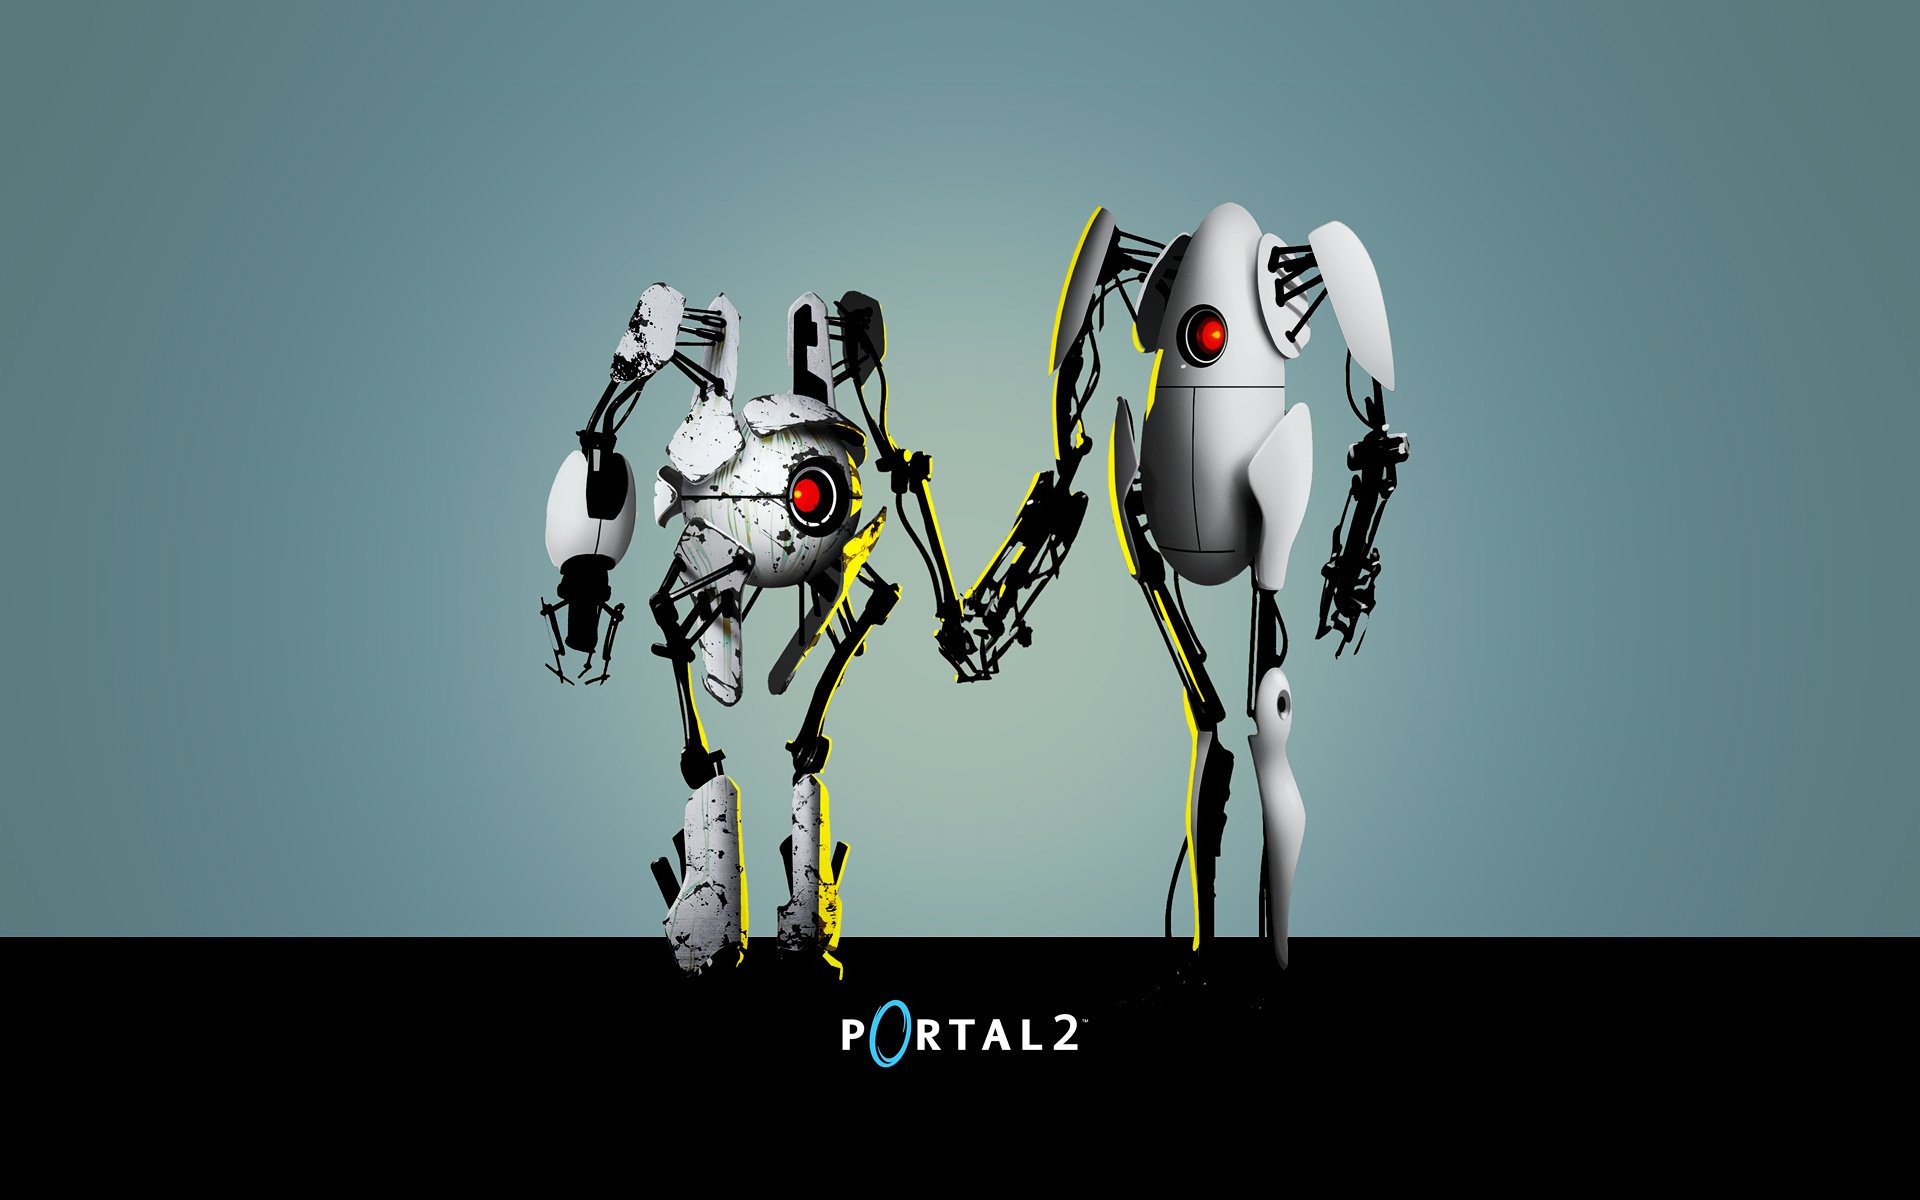 Аниме-роботы из portal 2 трогательно держатся за руки